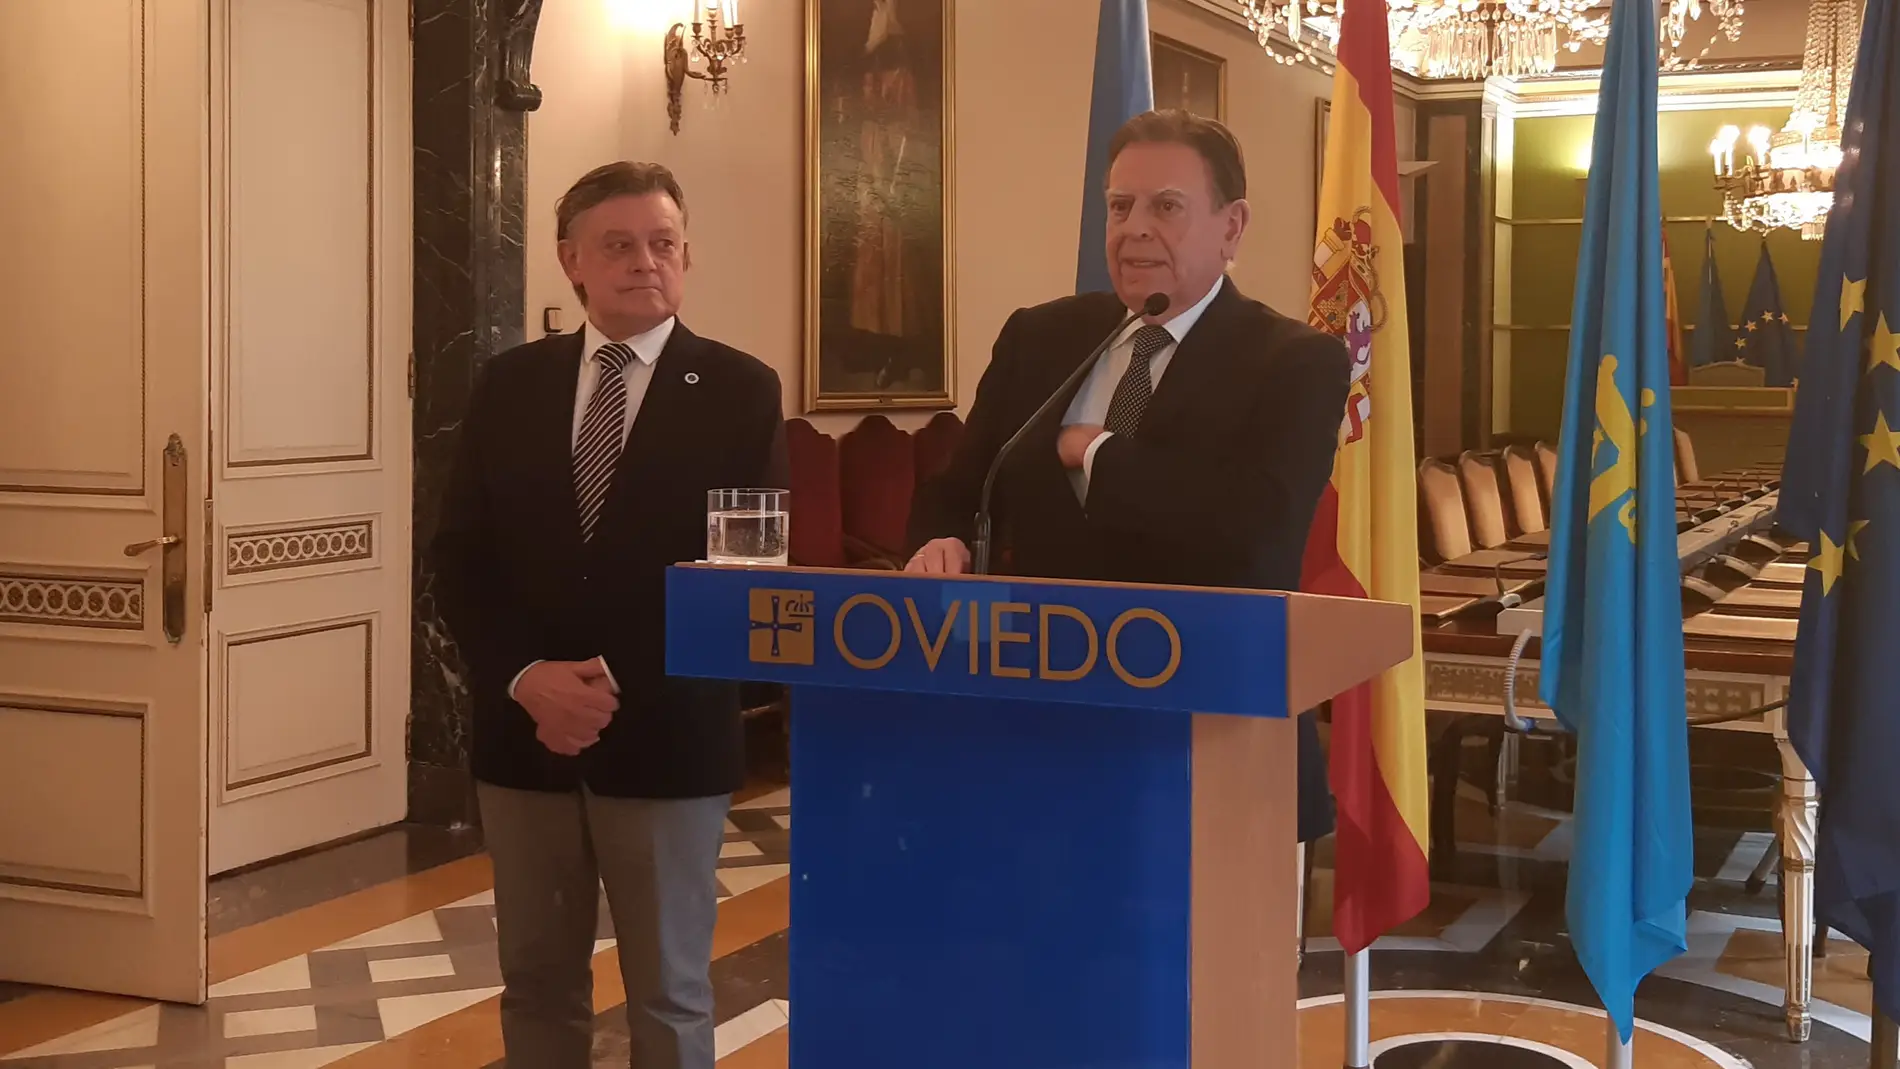 El alcalde Canteli afirma que Oviedo está entre las ciudades más seguras de Europa